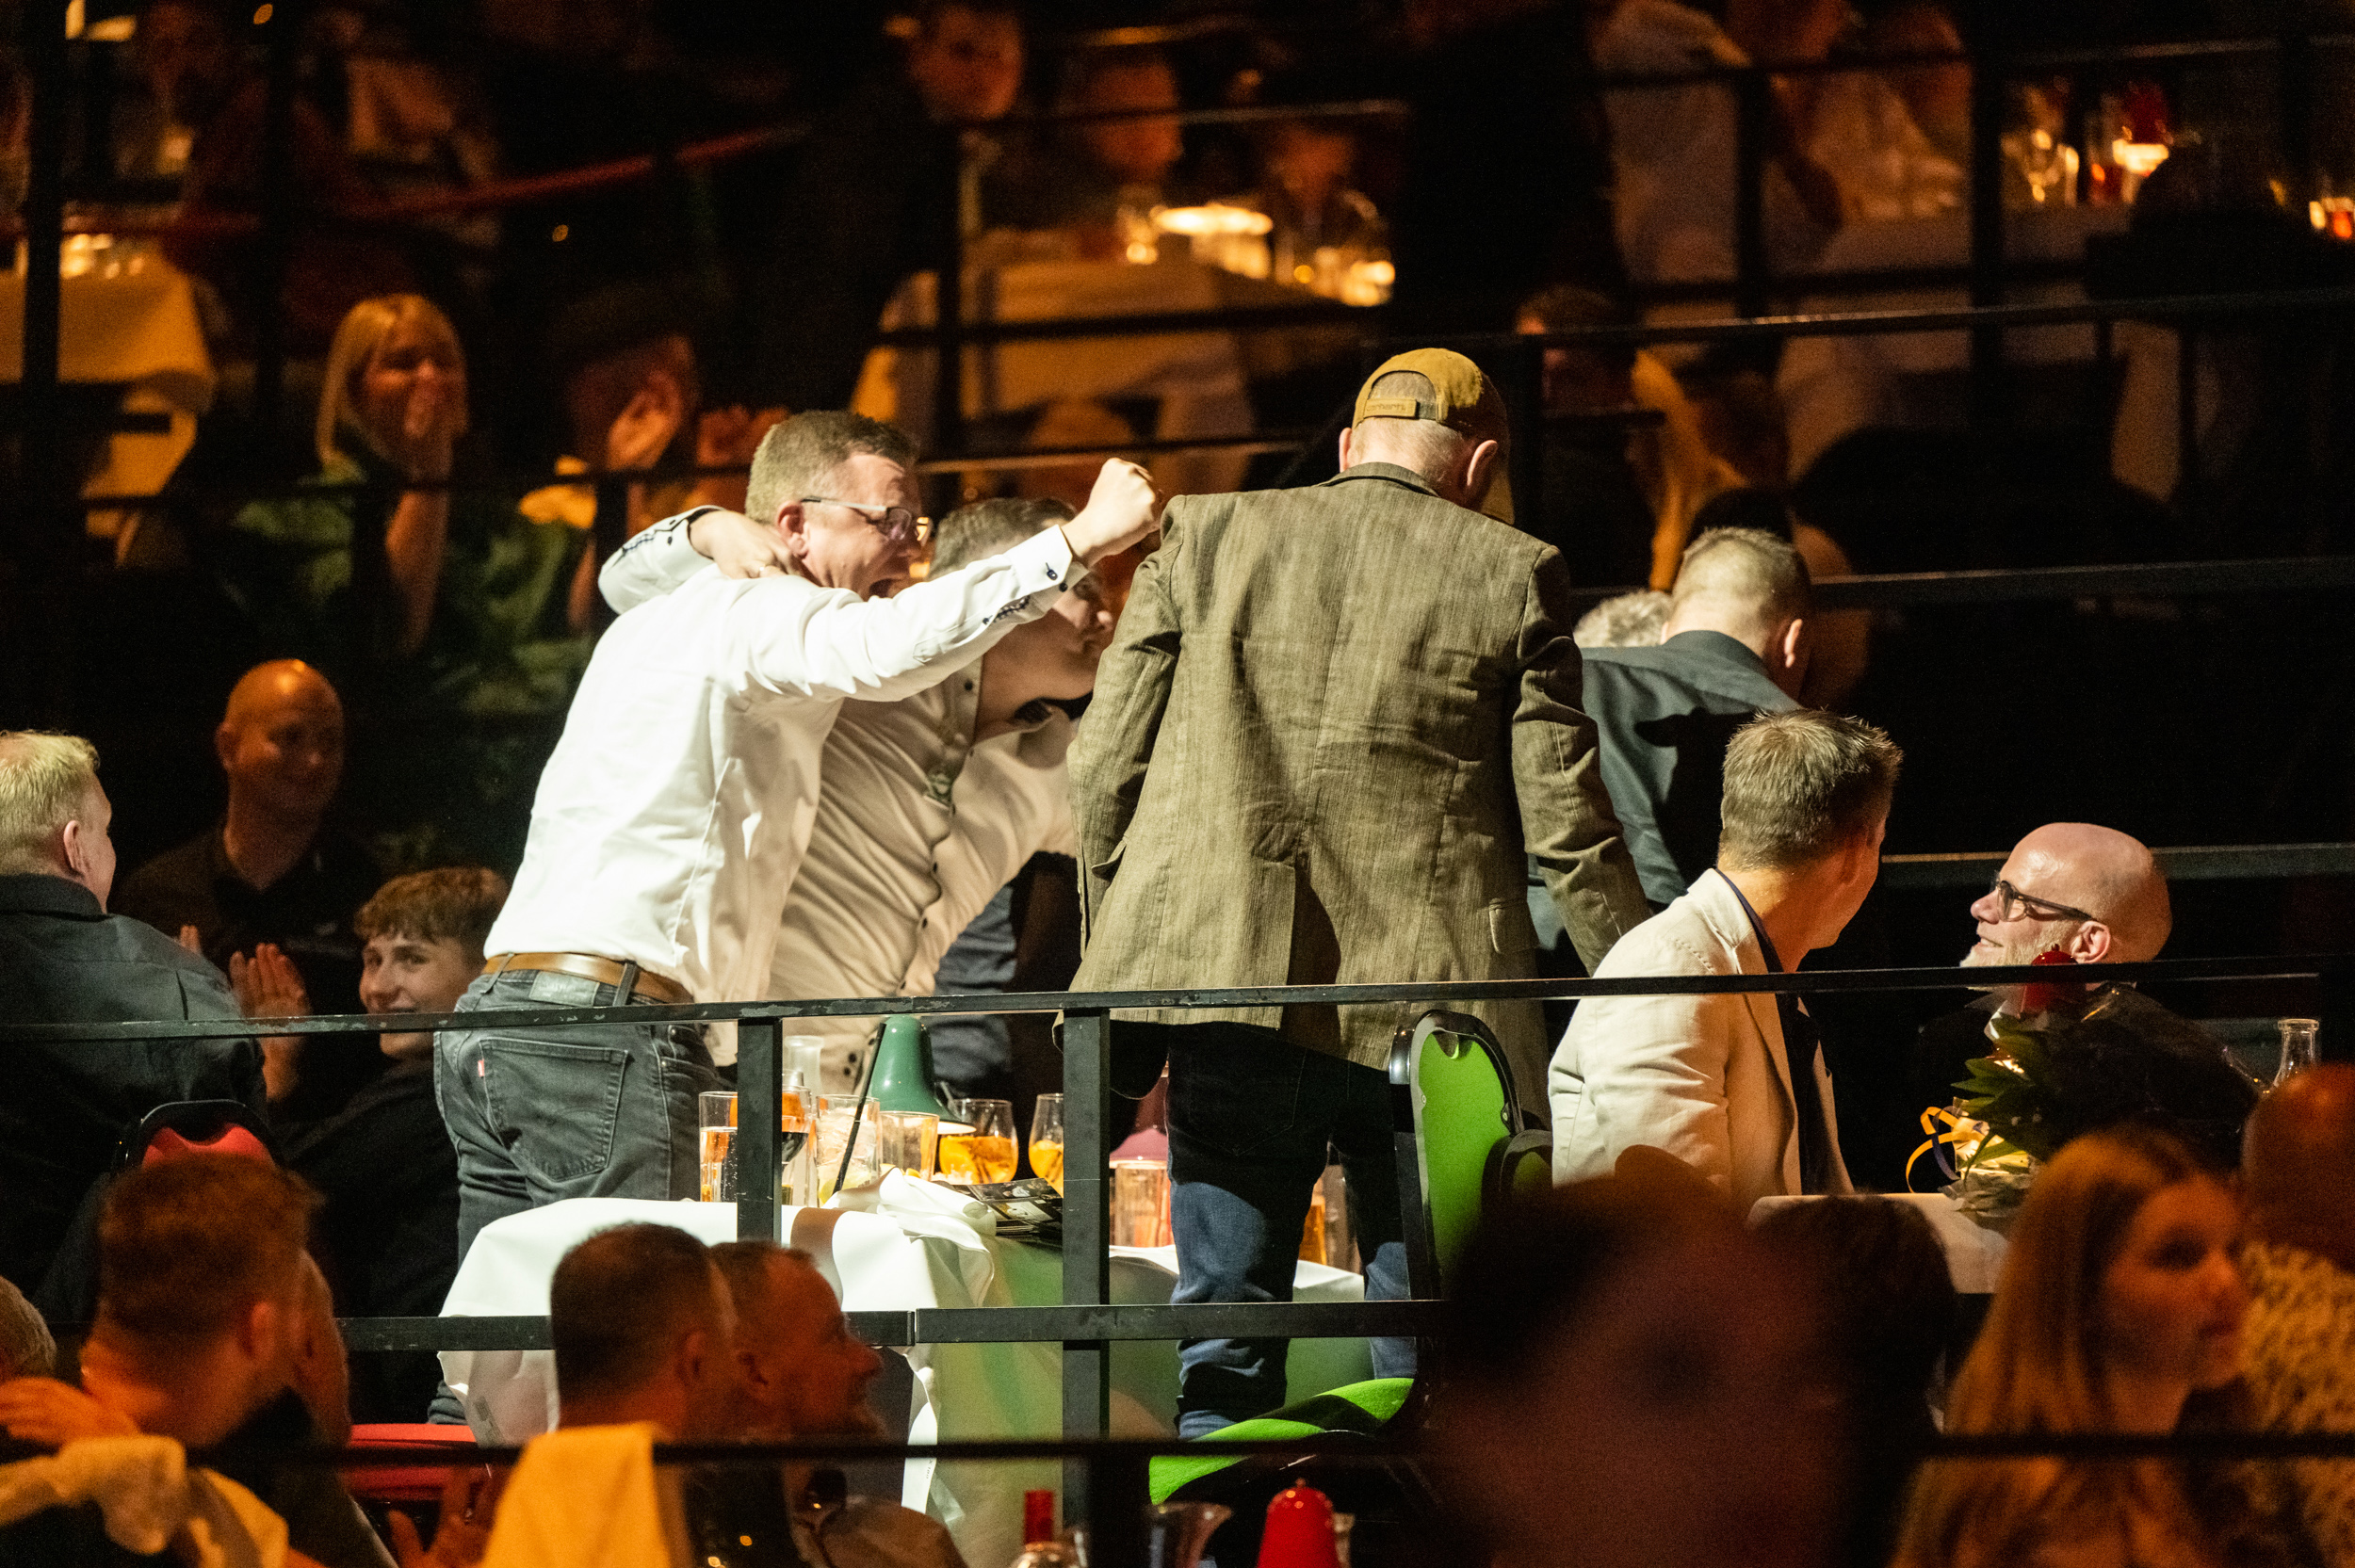 jublen ved kåring af årets tømrer +50 ansatte 2023 i cirkusbygningen i københavn